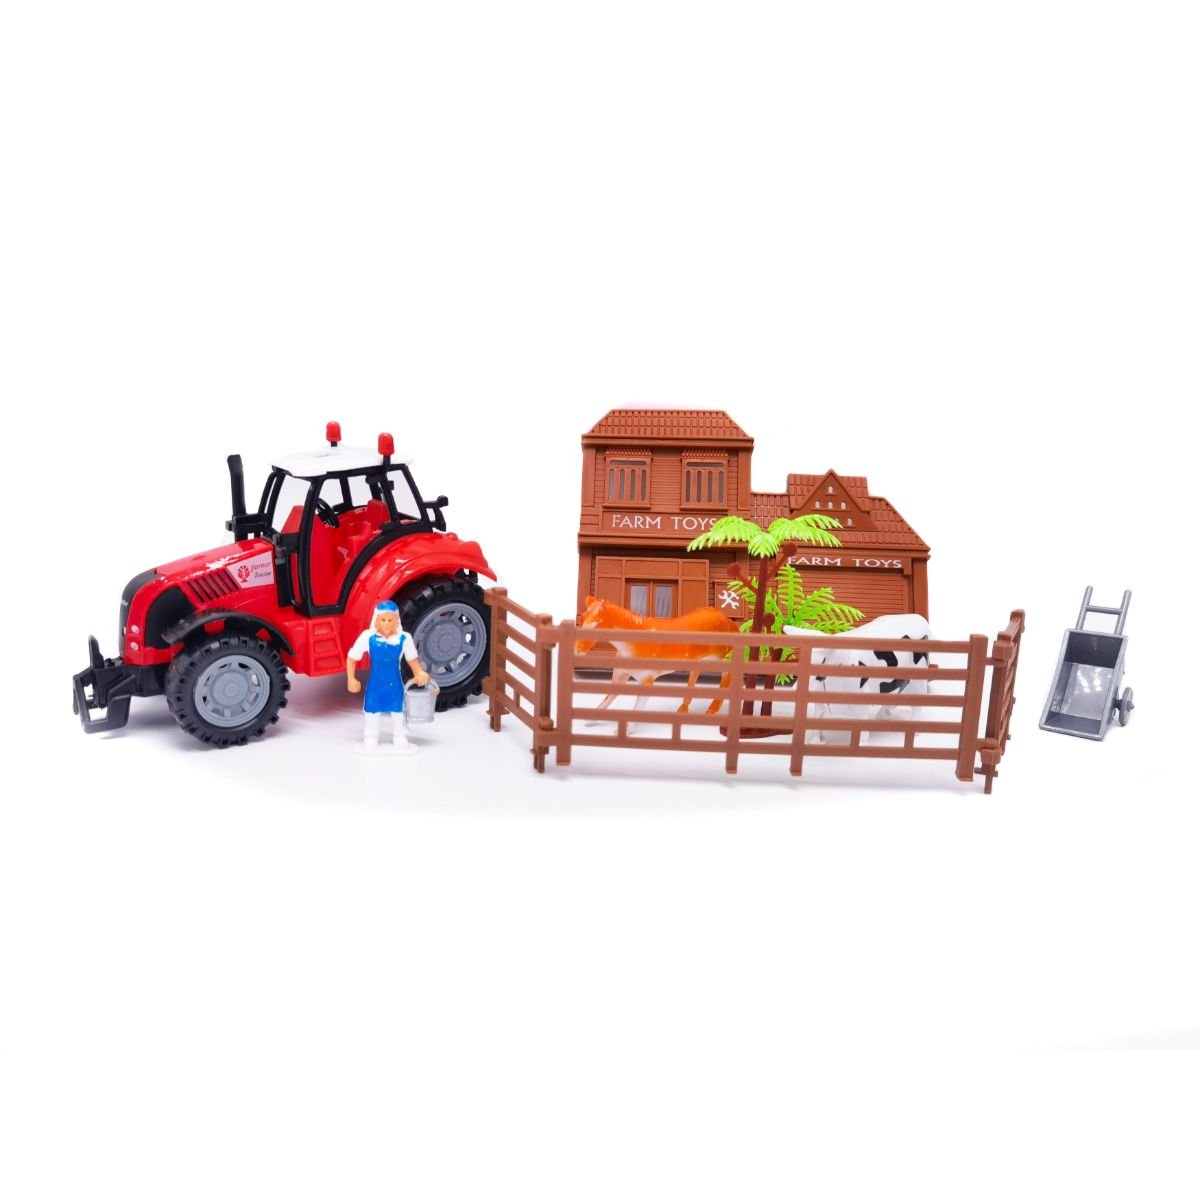 Tractor si mini-ferma cu animale, Farmer Toys, Cool Machines, rosu Masinute 2023-09-21